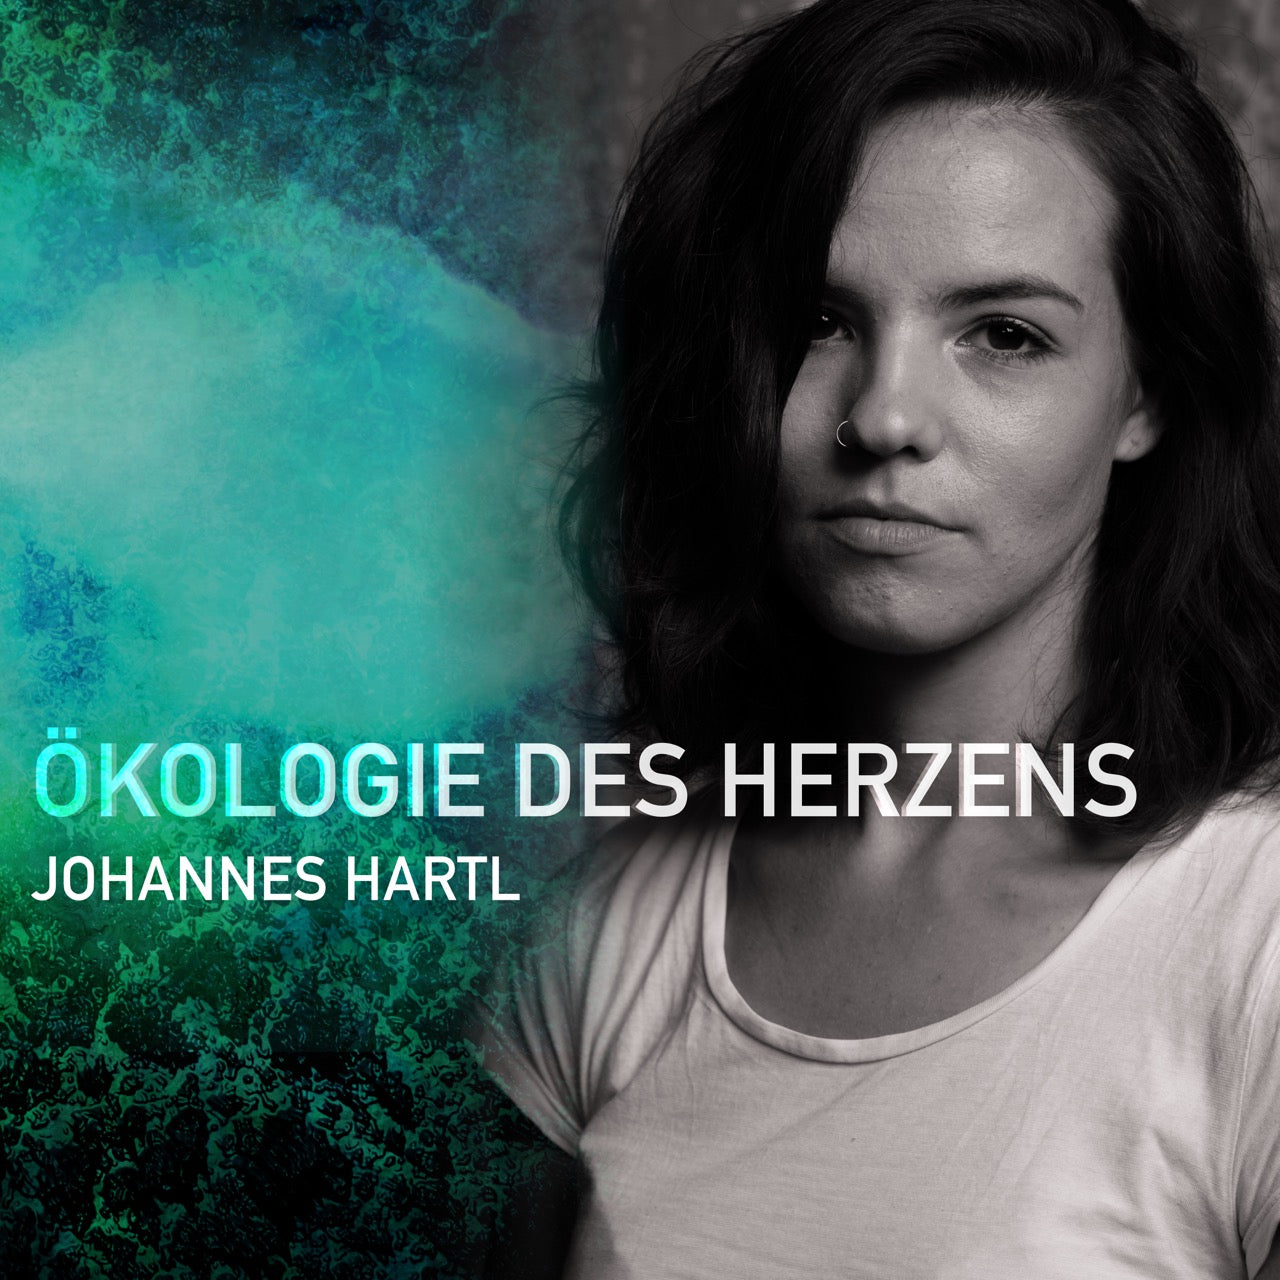 Ökologie des Herzens - MEHR 2020 | CD - Gebetshaus Augsburg | Shop